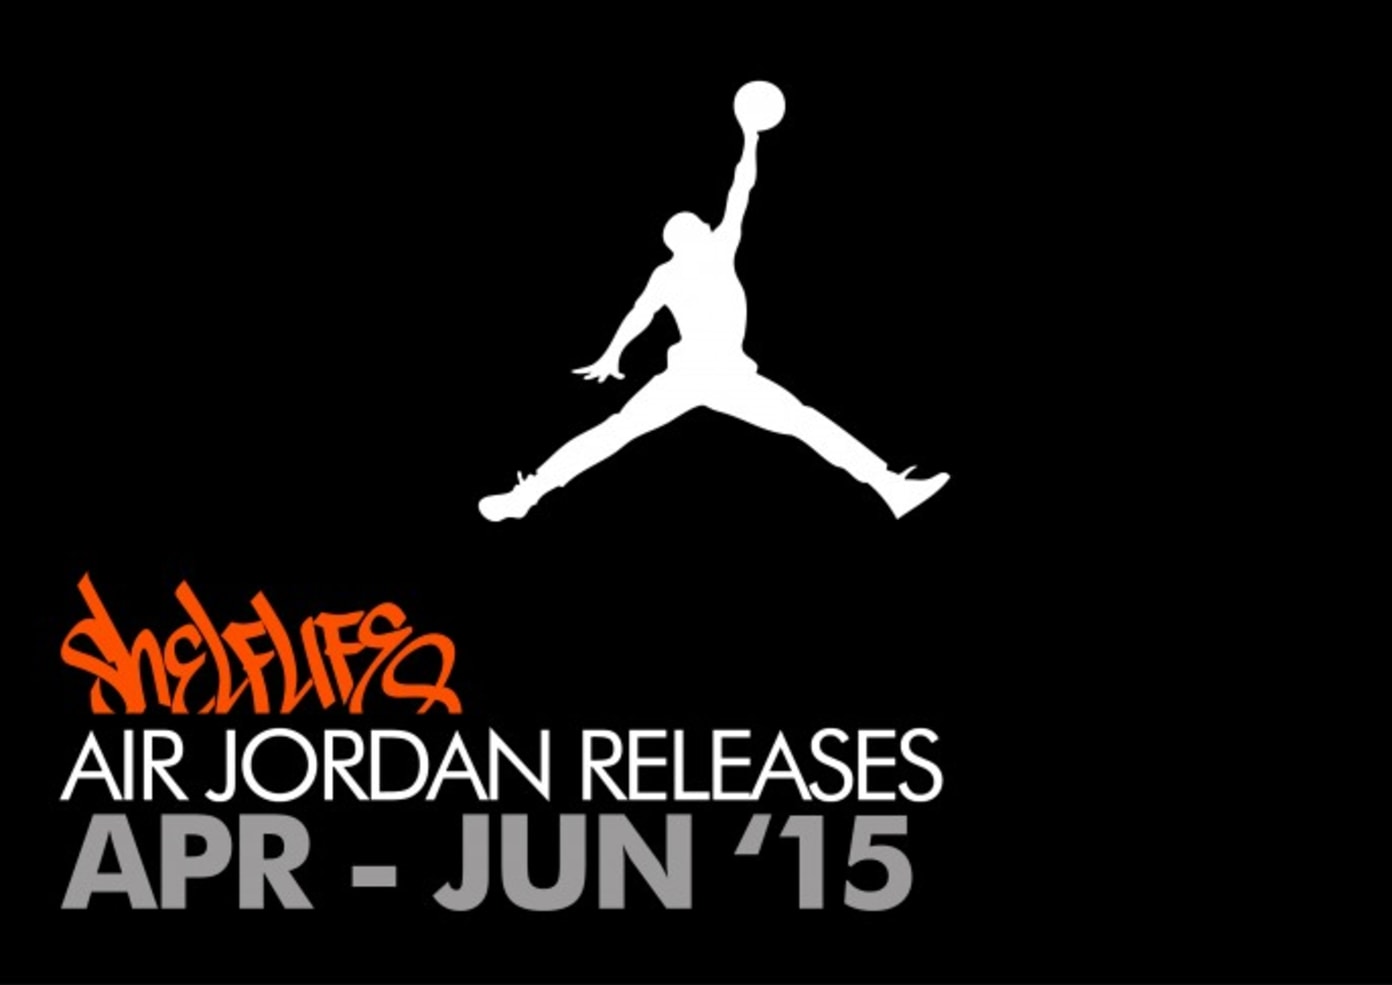 air jordan release dates 2015